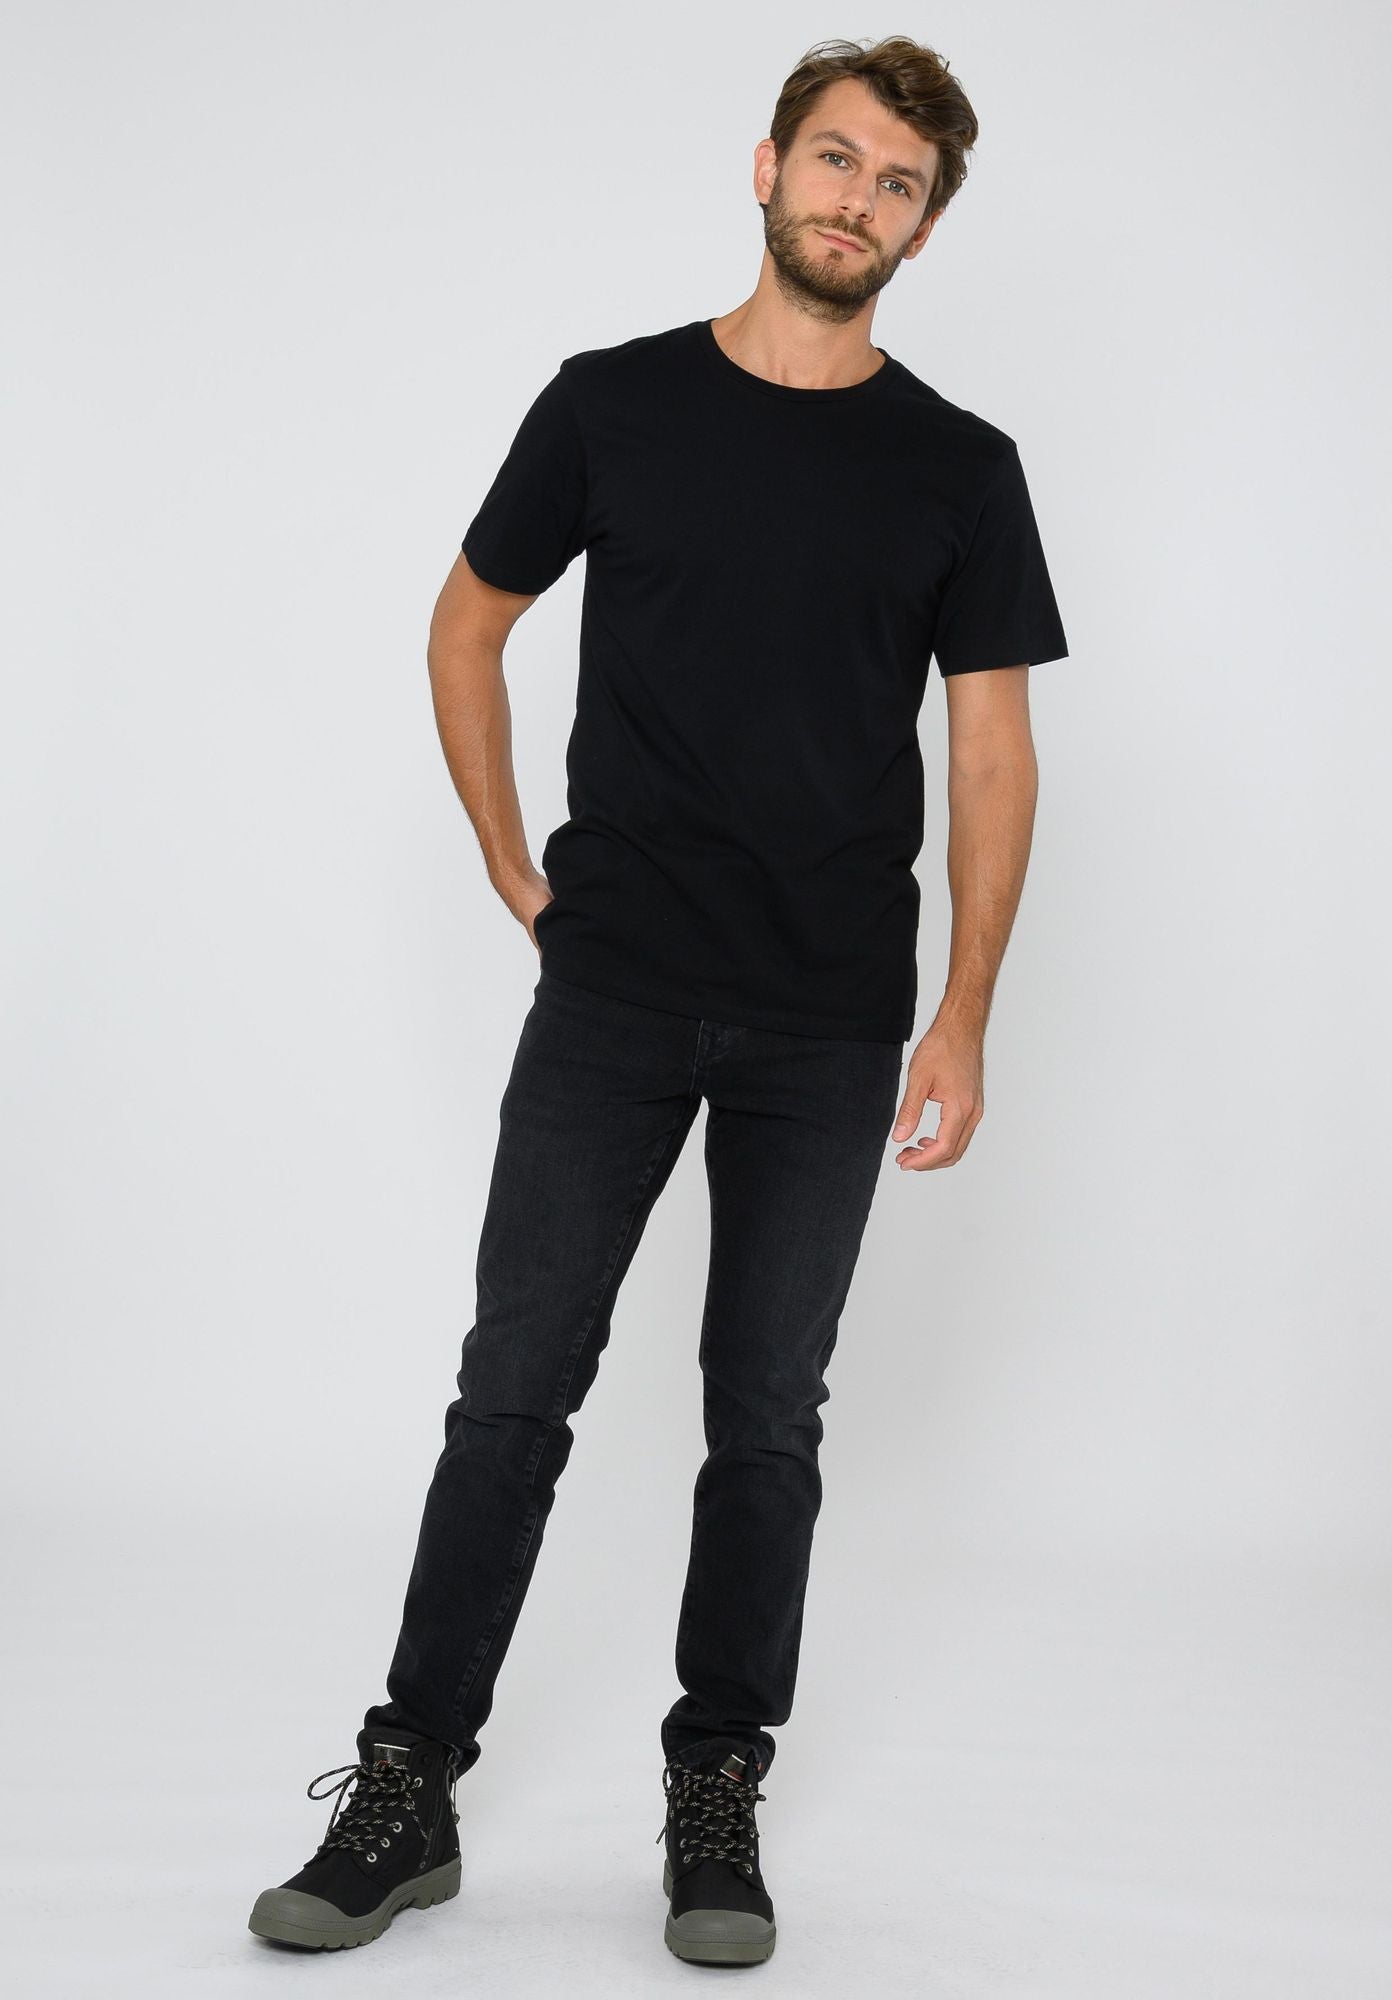 TT02 T-Shirt Black (GOTS)